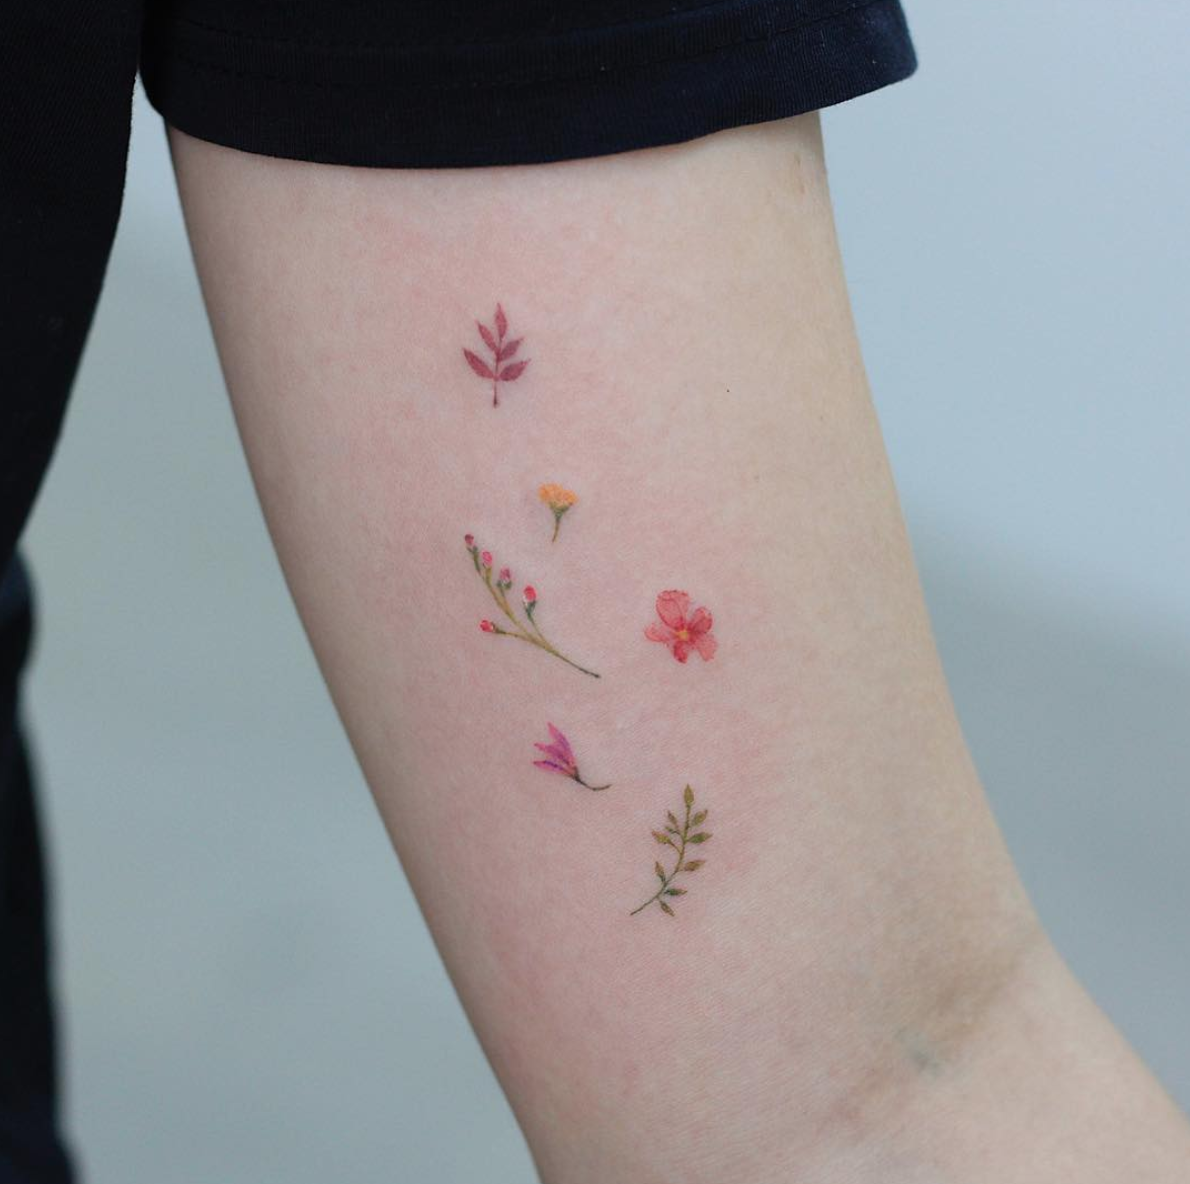 Botanical-illustration-tattoo | Tumblr